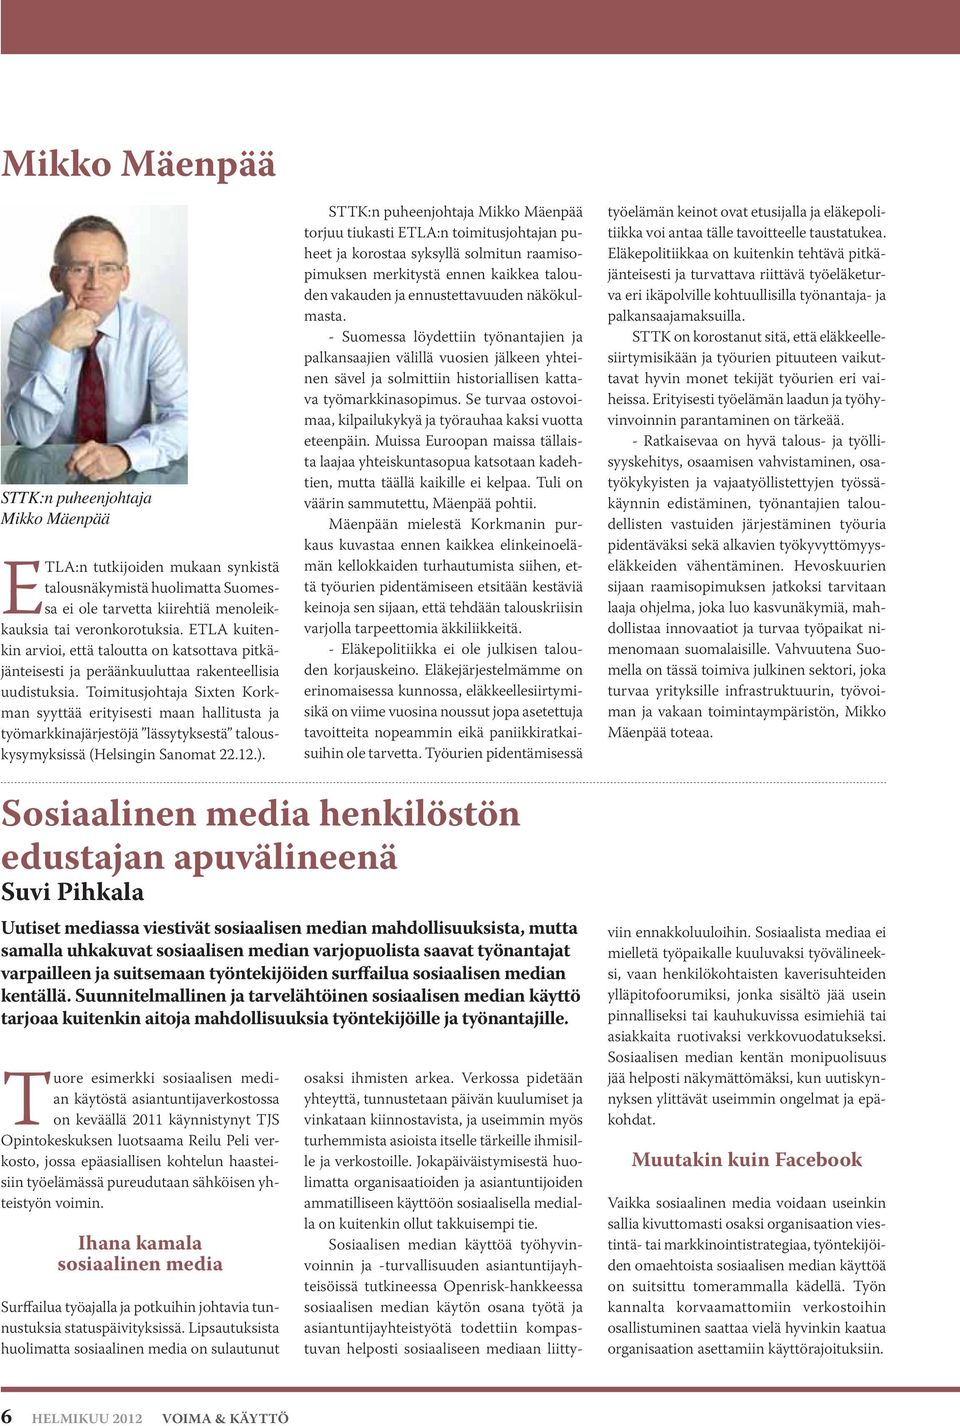 Toimitusjohtaja Sixten Korkman syyttää erityisesti maan hallitusta ja työmarkkinajärjestöjä lässytyksestä talouskysymyksissä (Helsingin Sanomat 22.12.).